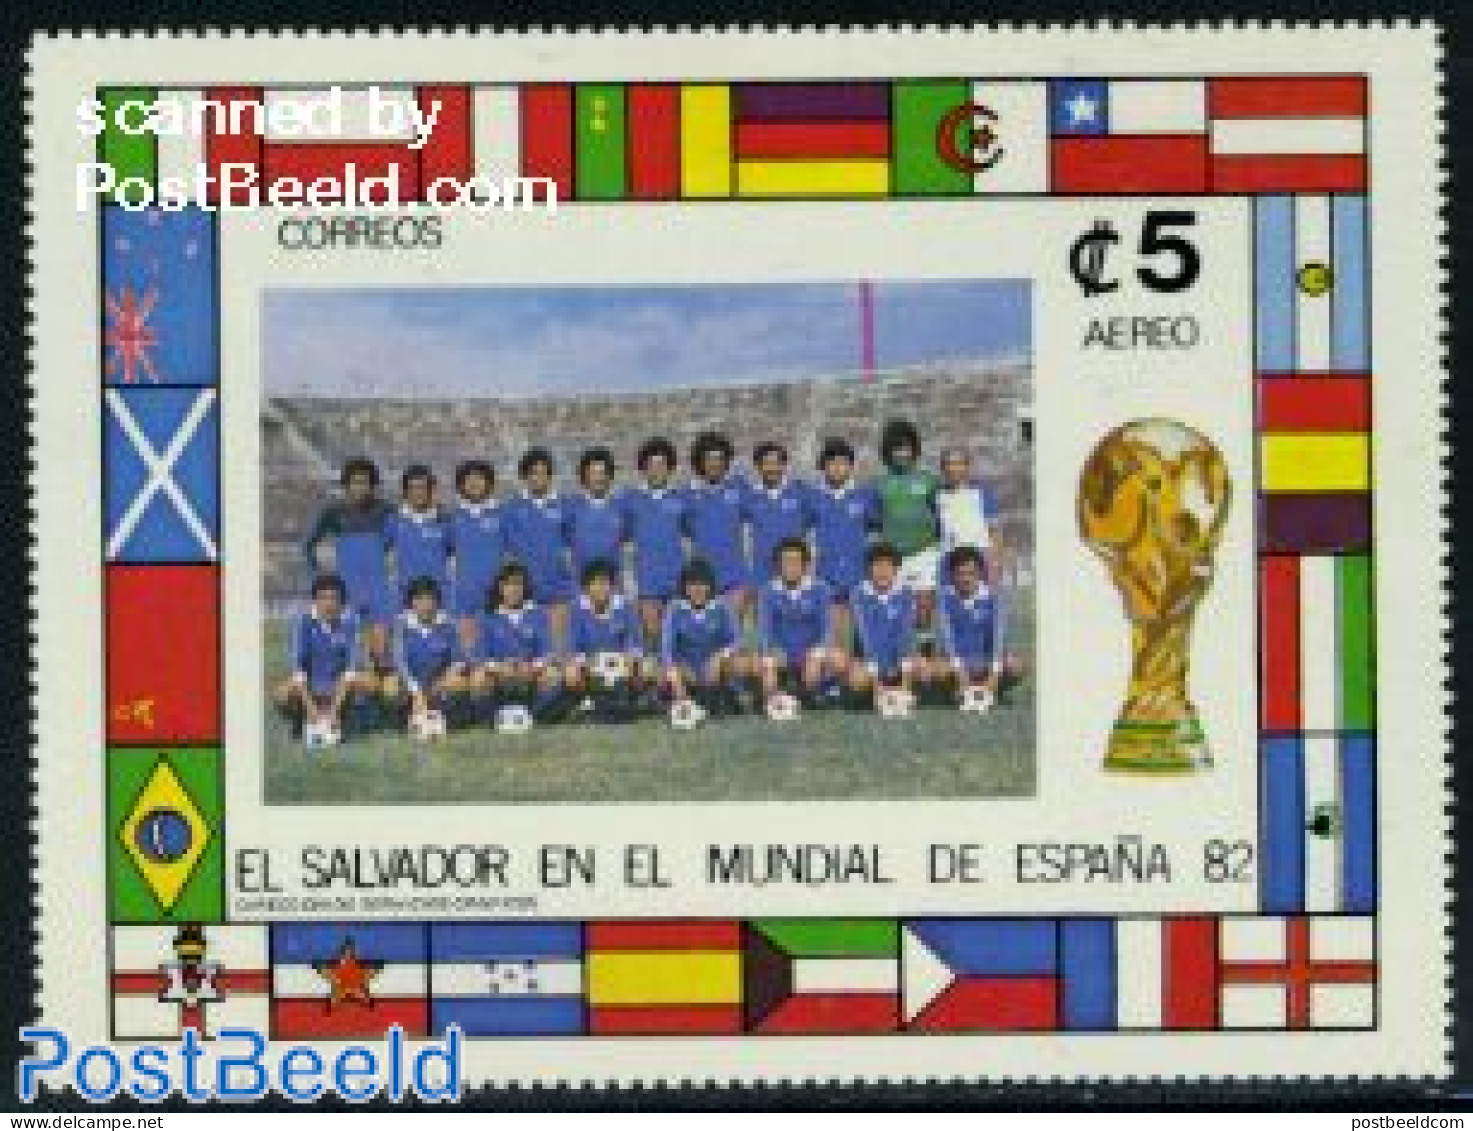 El Salvador 1982 World Cup Football S/s, Mint NH, History - Sport - Flags - Football - Salvador